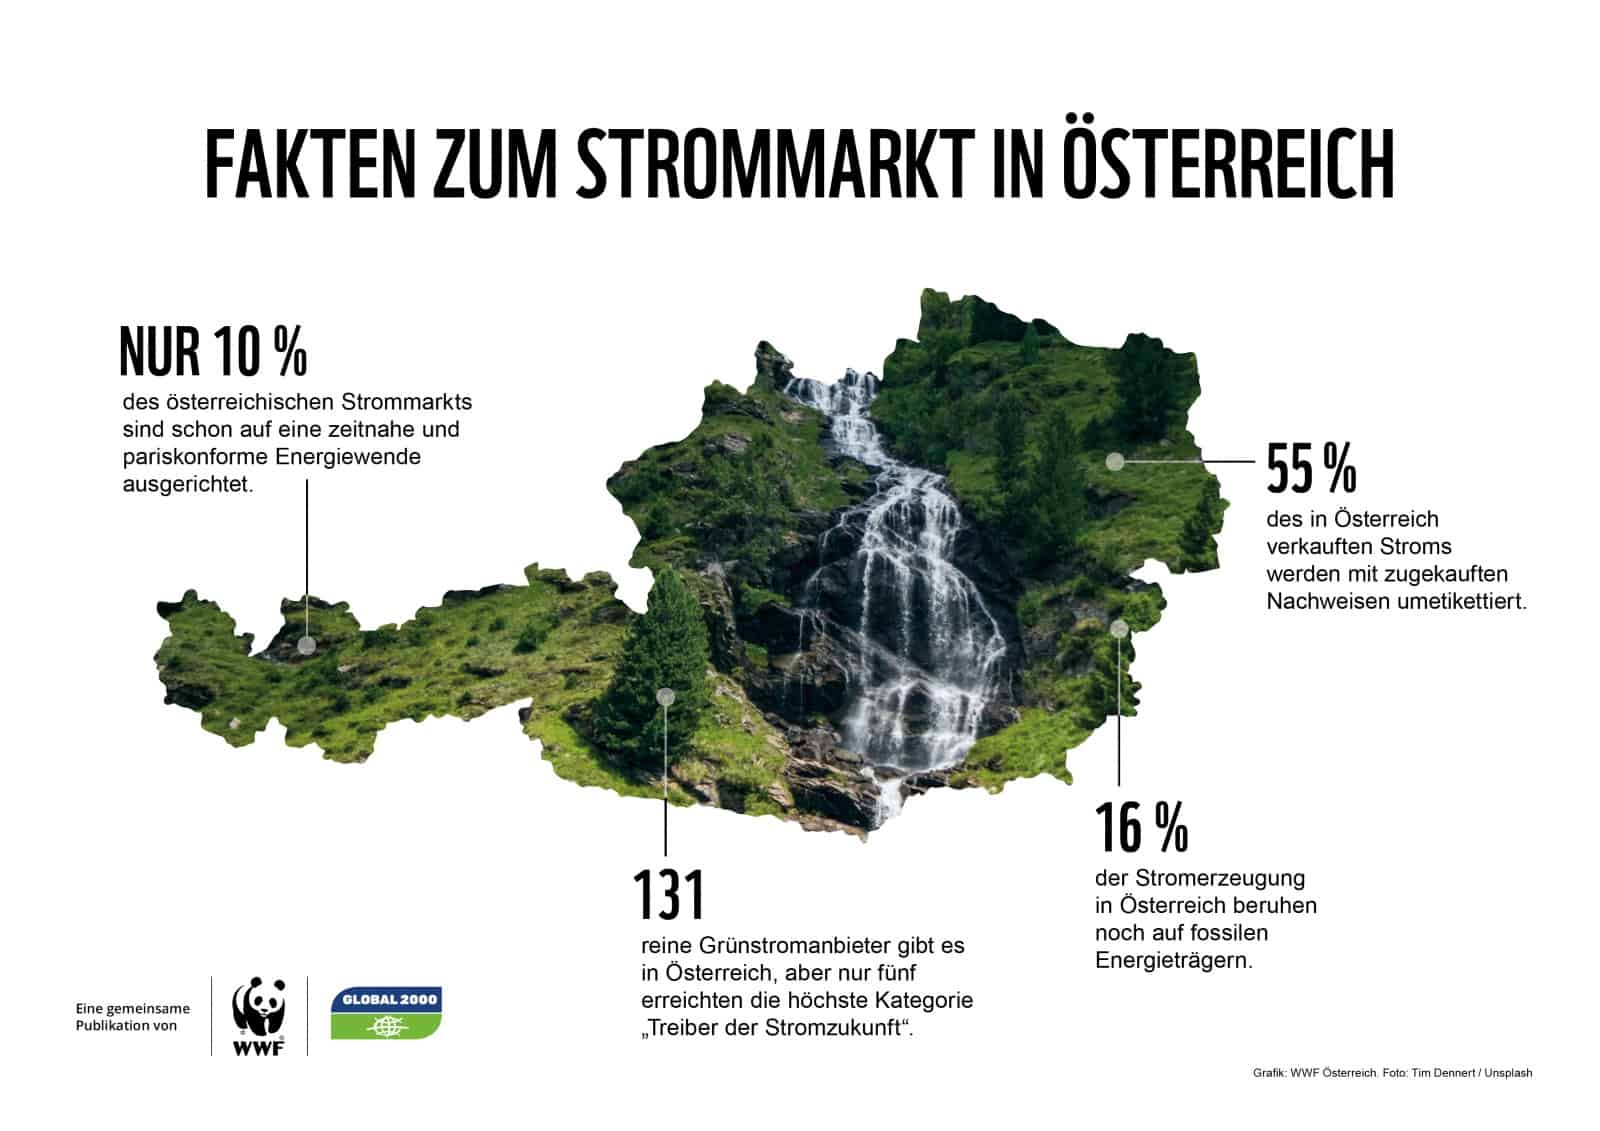 Fakten zum Österreichischen Strommarkt, © by ©Thomas Steffl/WWF